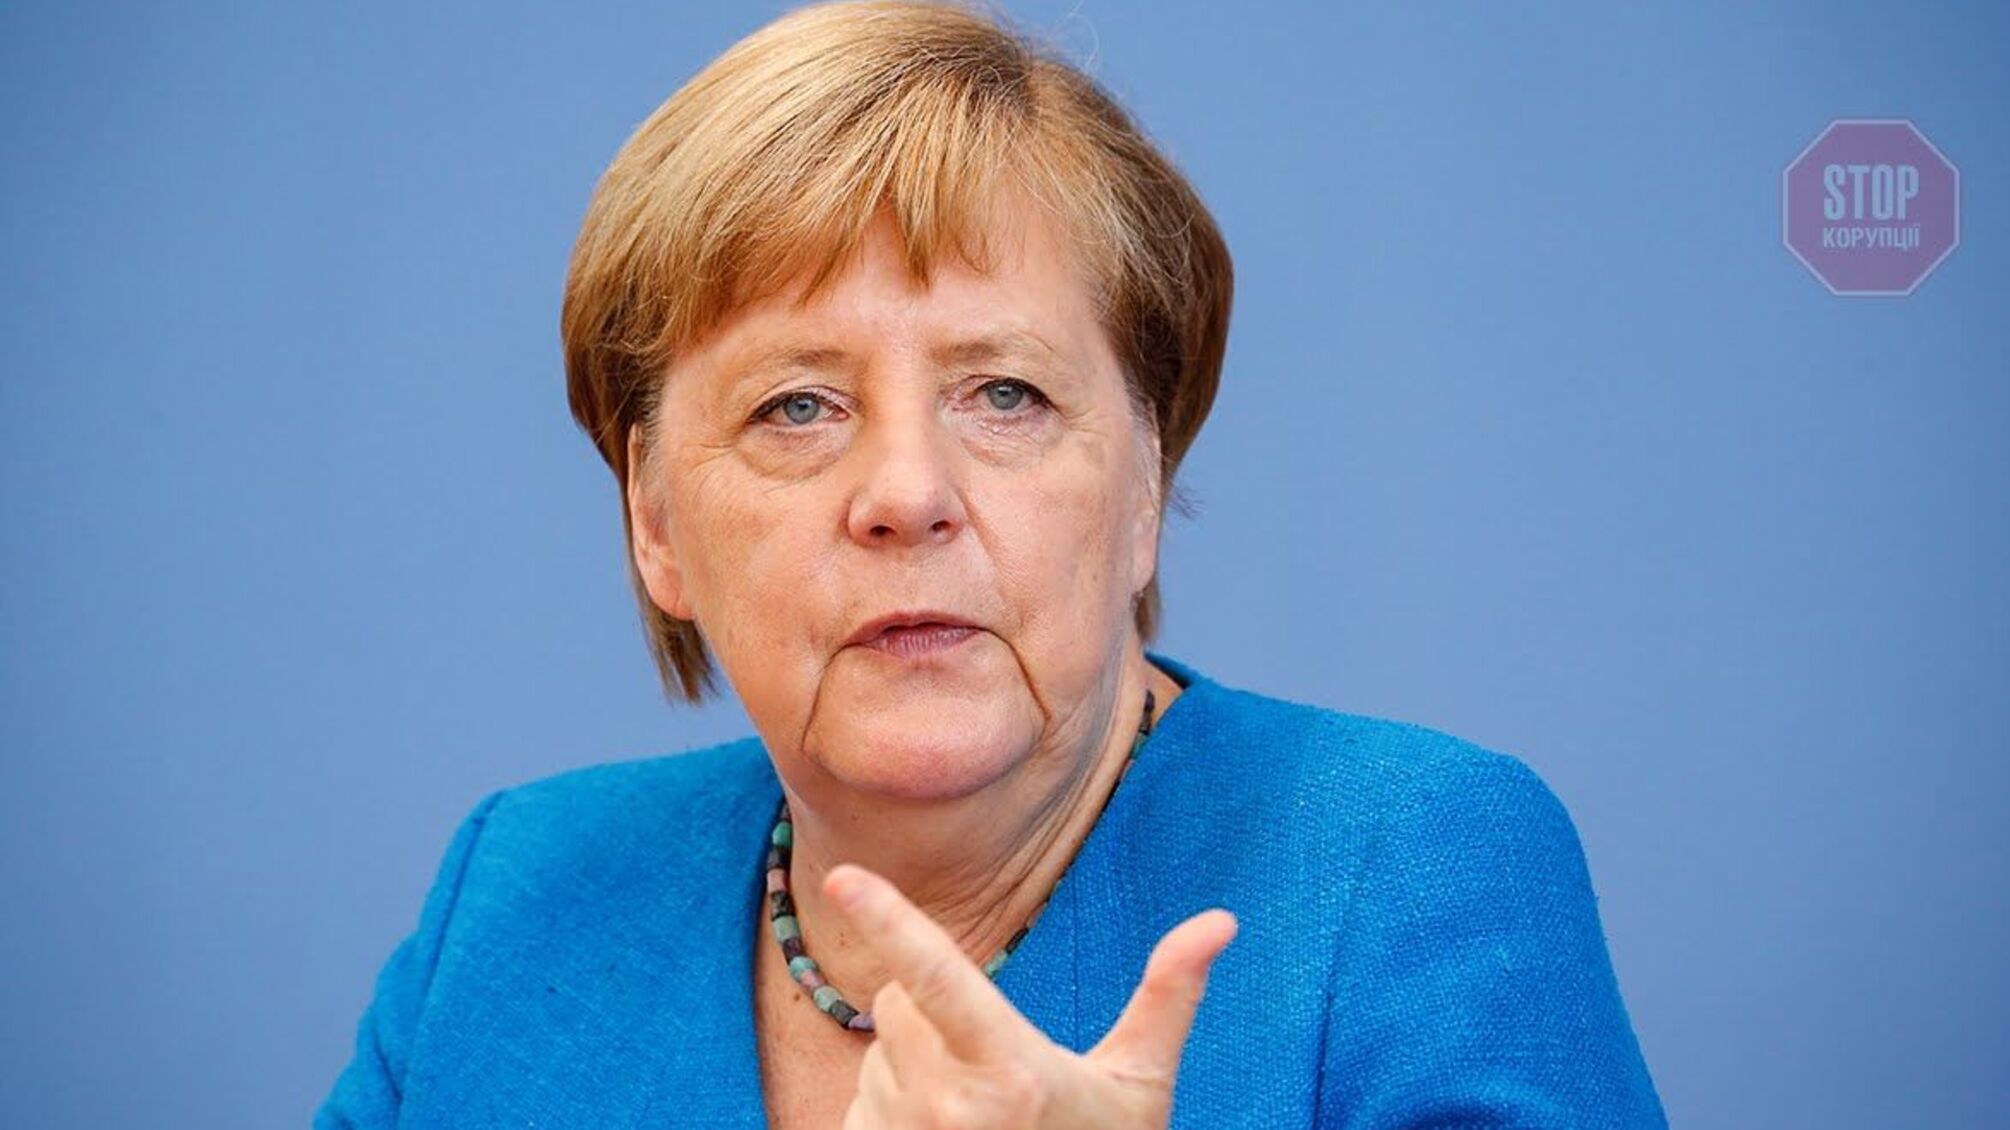 Лідери ЄС відмовили Меркель в організації “прямого контакту з Путіним”